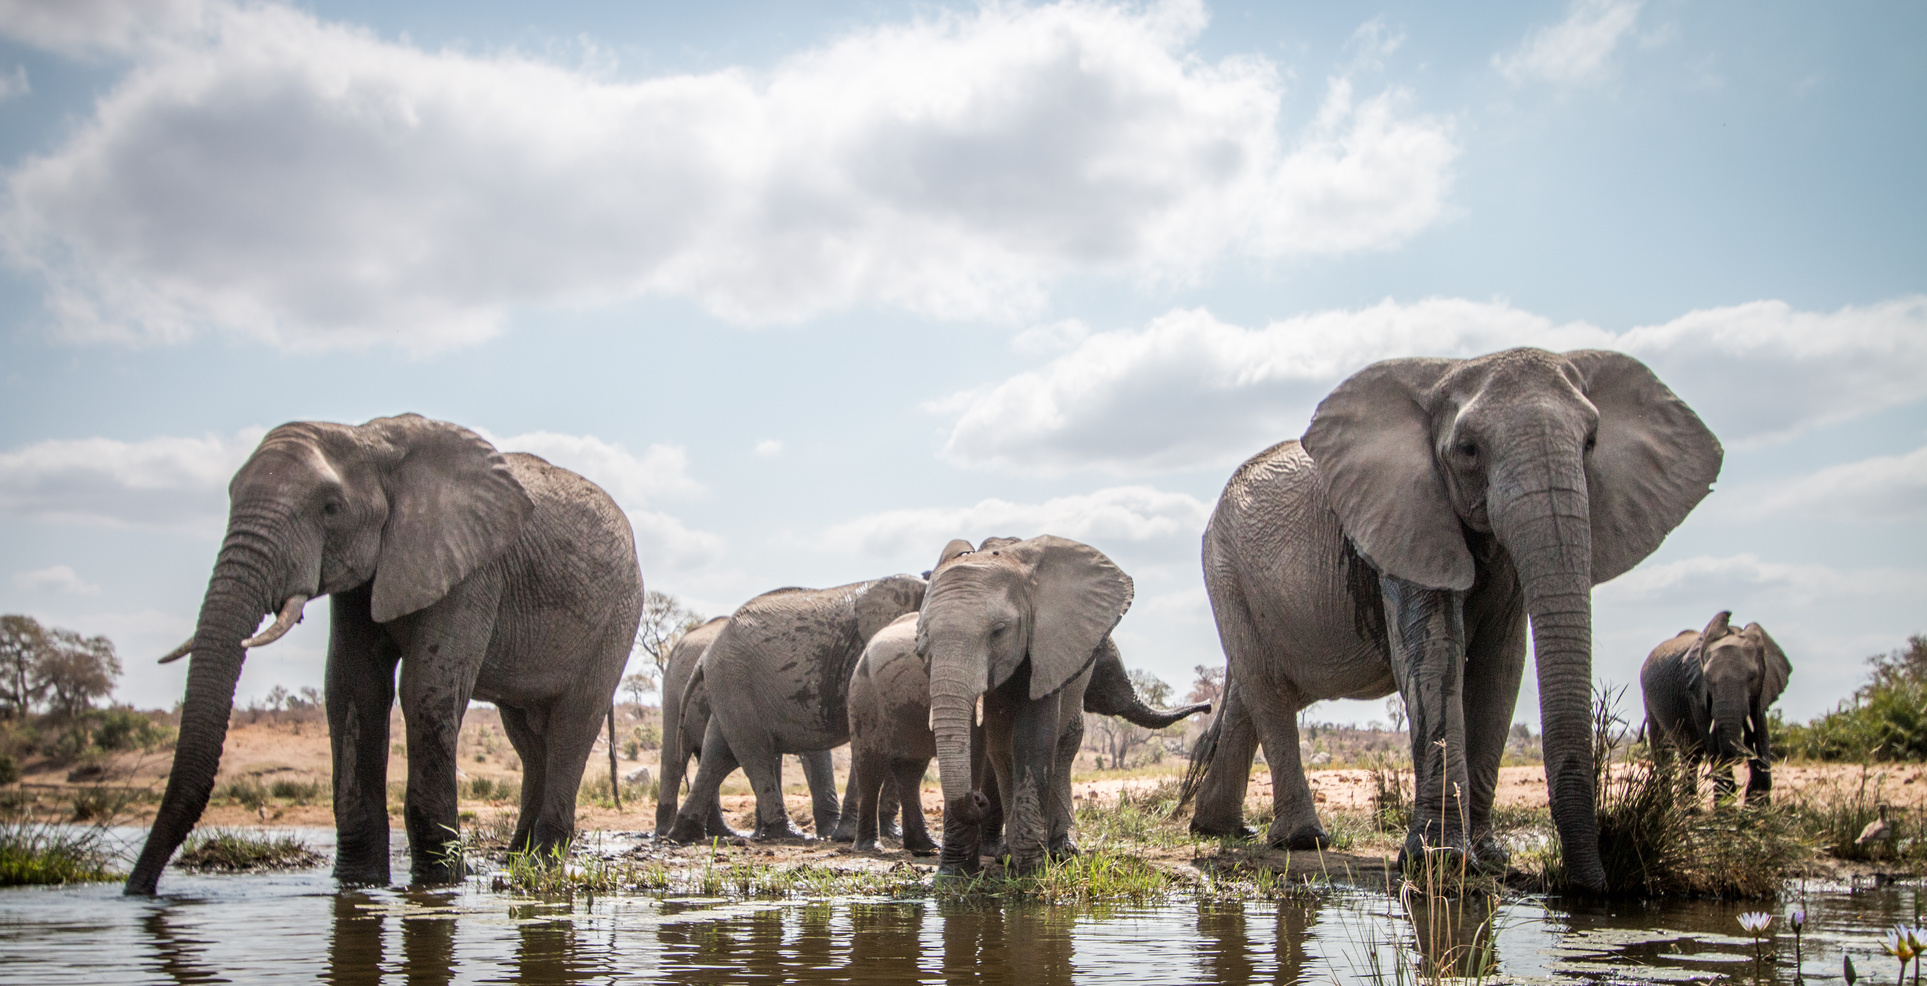 Animaux sociaux, les éléphants communiquent beaucoup entre eux, et de multiples manières. © Simoneemanphoto, Fotolia